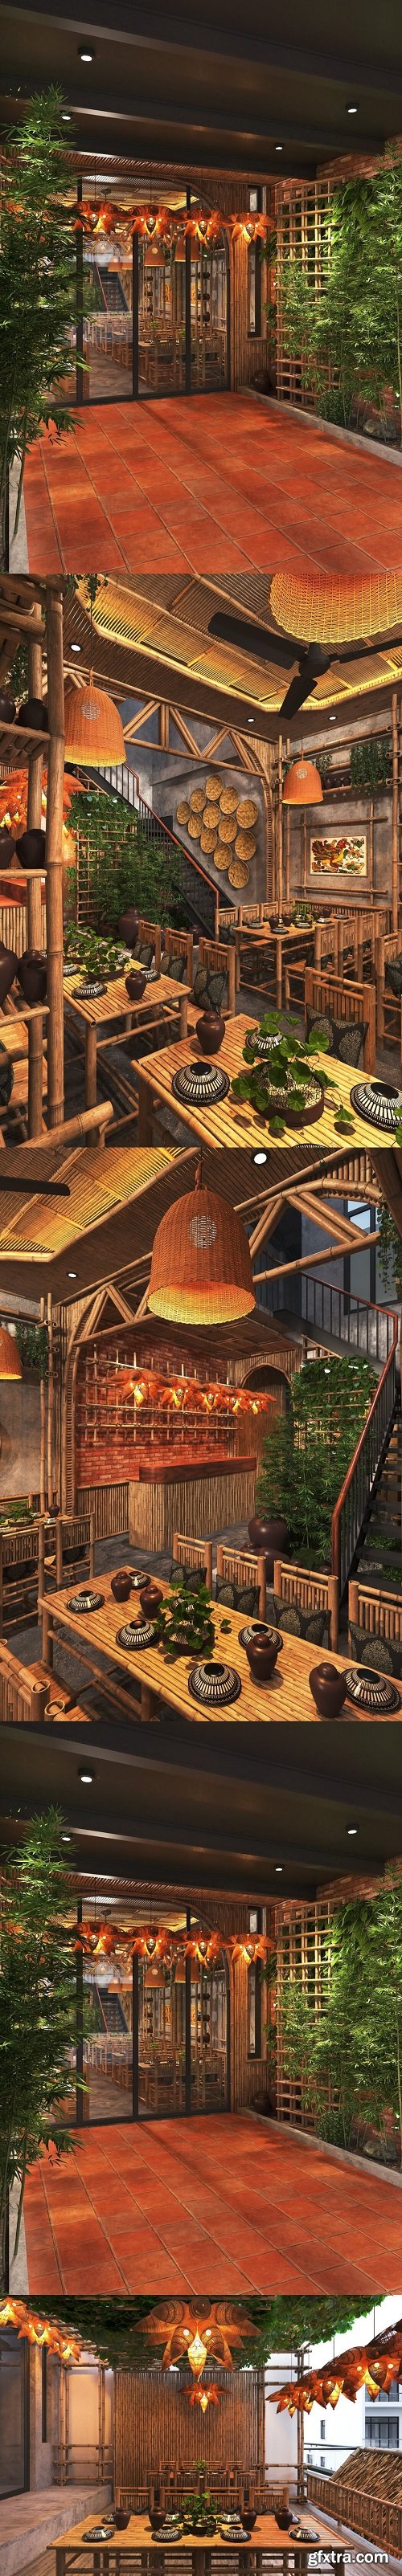 Restaurant Interior by Thai Chung